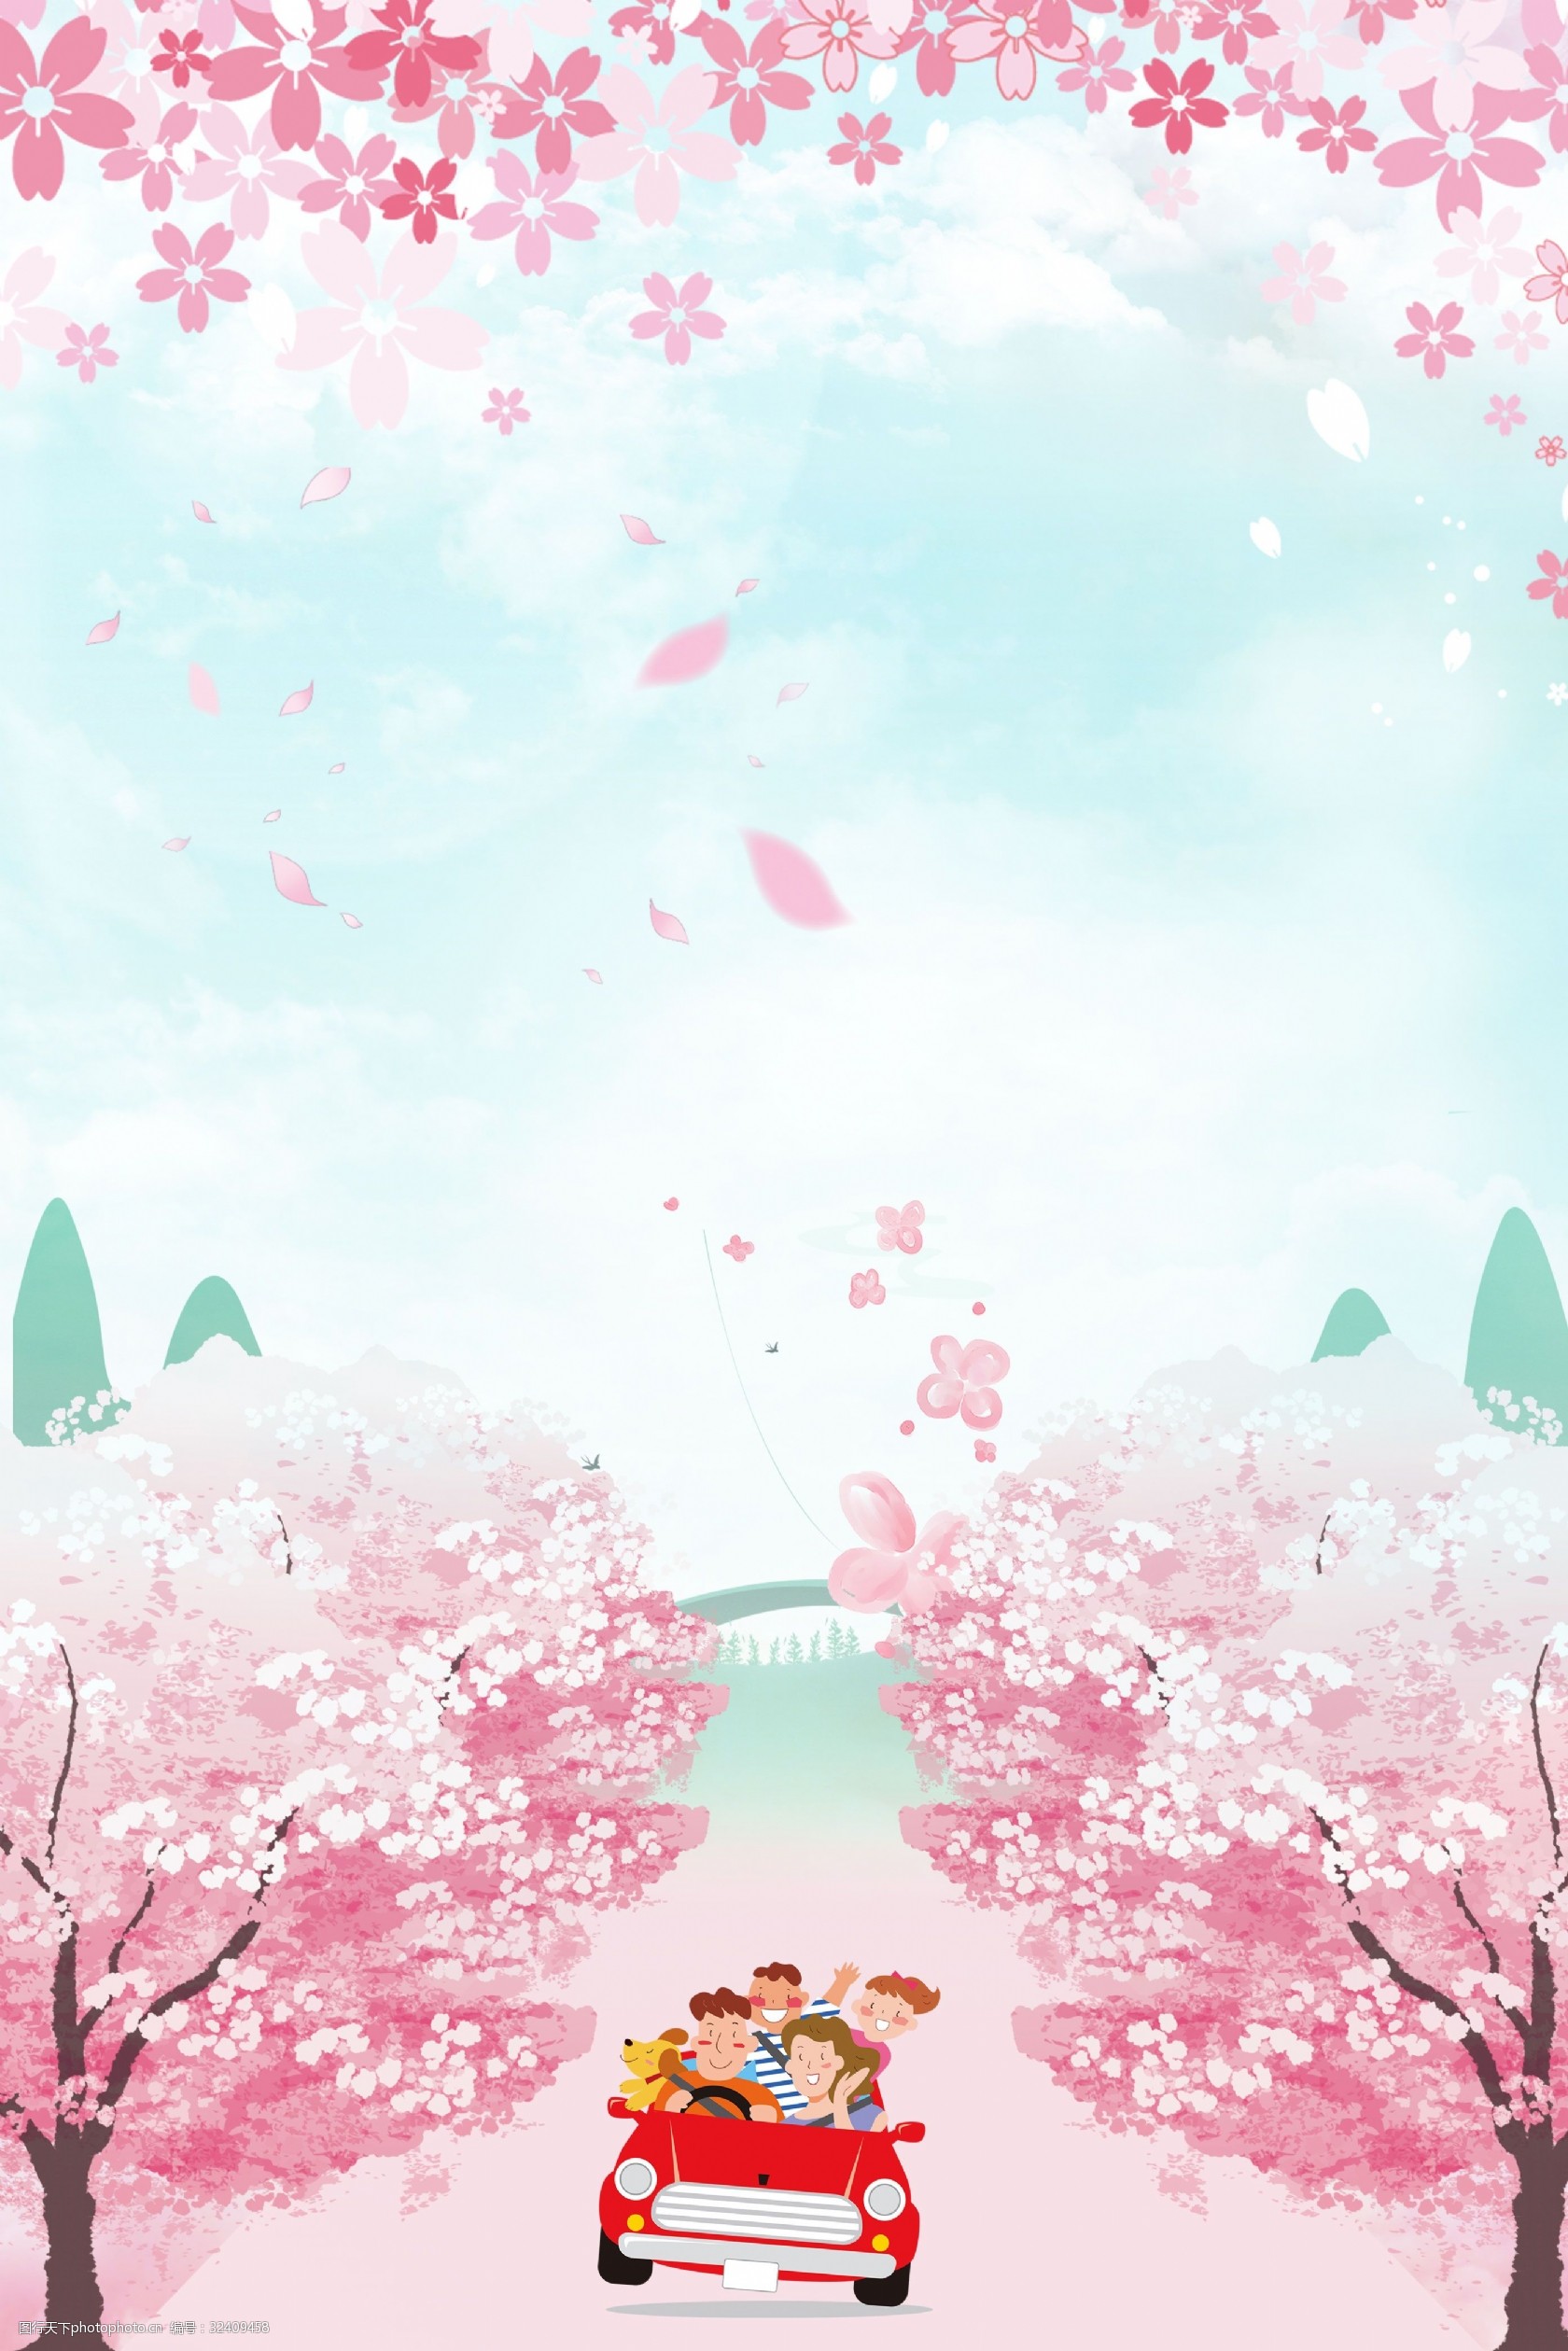 关键词:樱花季浪漫之旅合成背景 樱花 樱花季 樱花节 唯美 粉色 花瓣